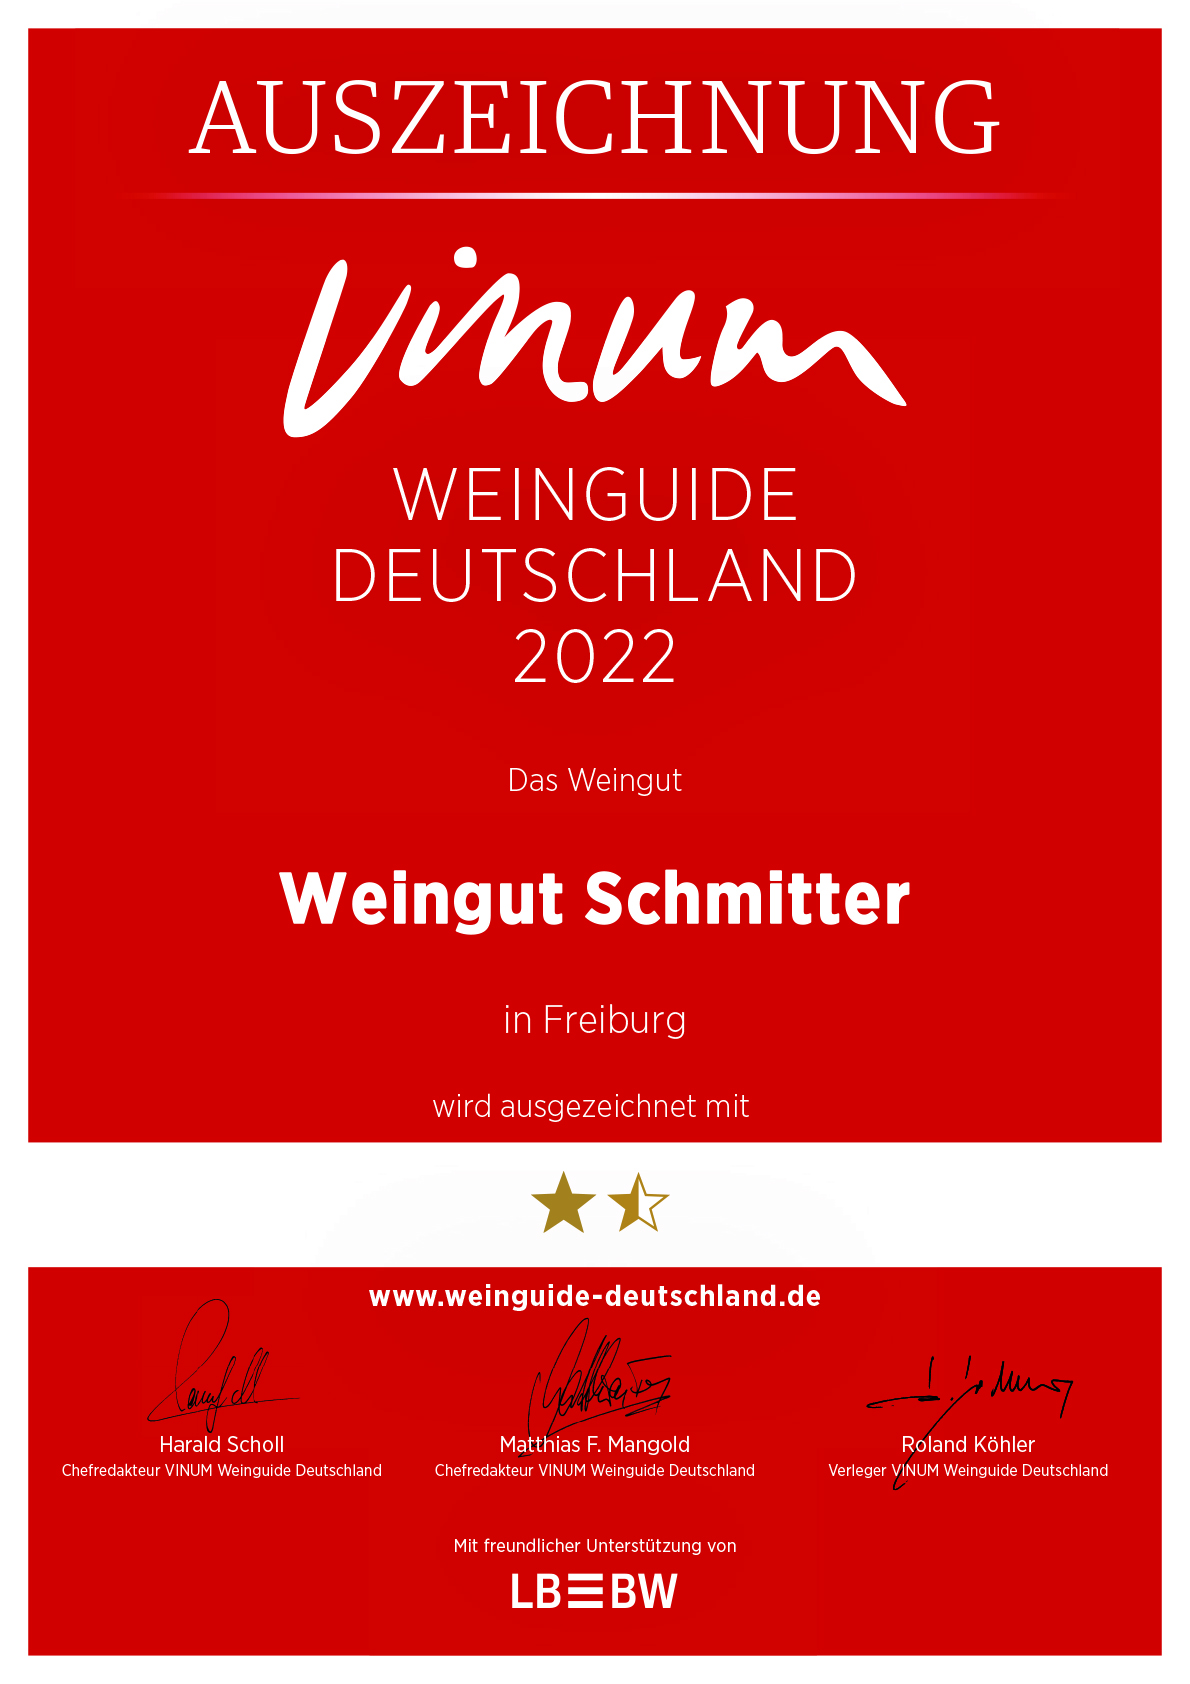 Urkunden Vinum für Urkundenversand 1021 für Einzel-PDFs.psmd